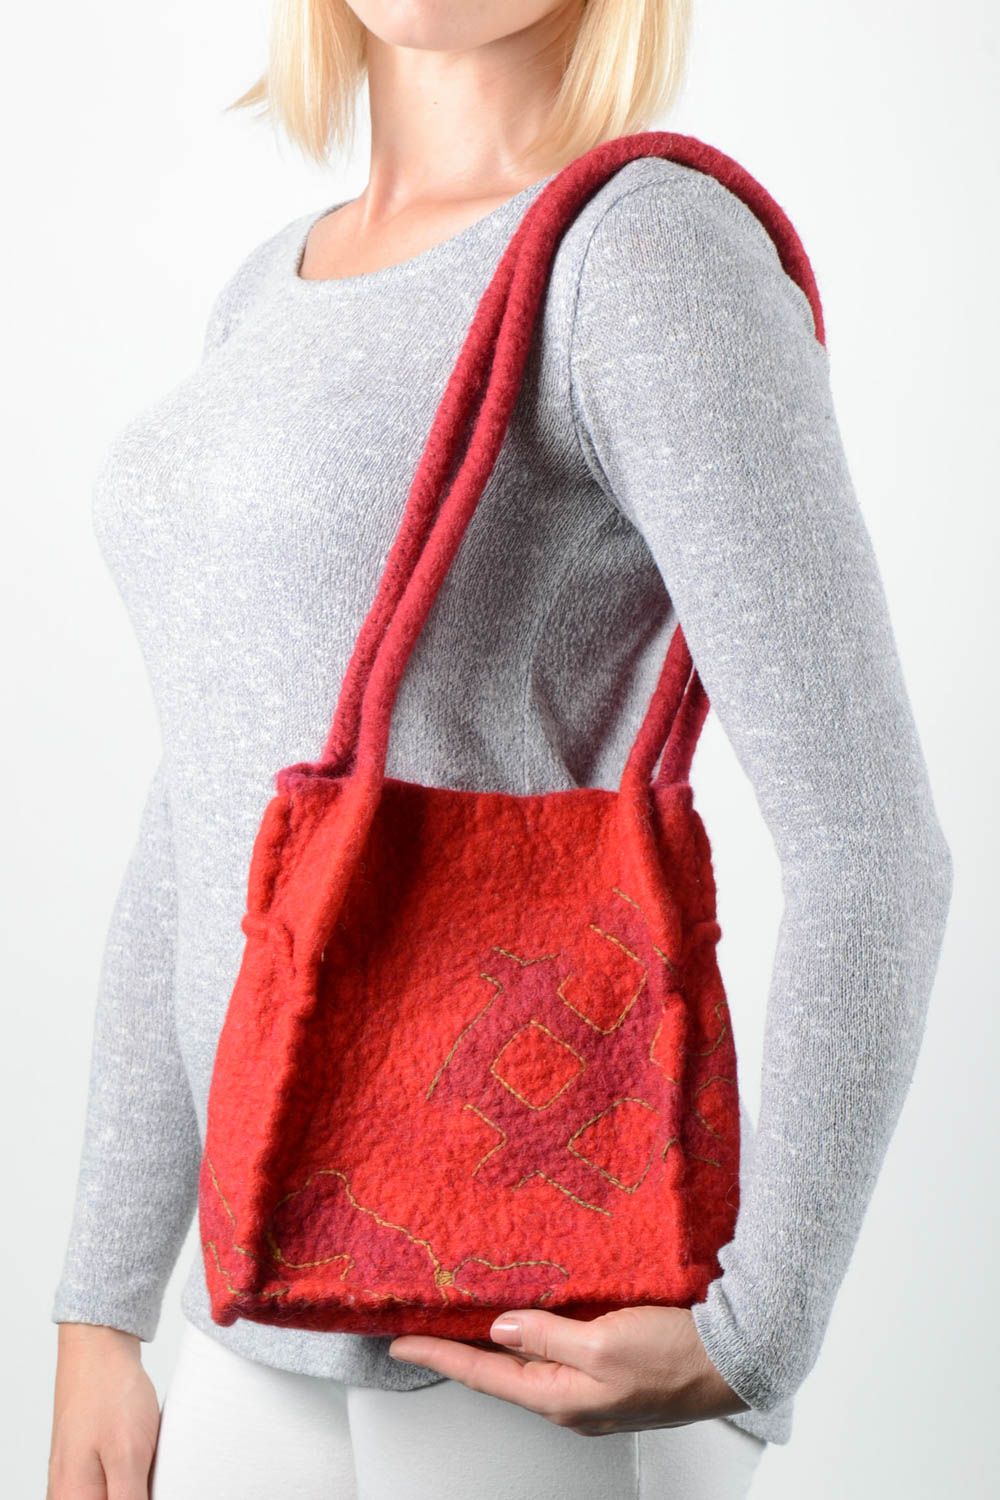 Сумка ручной работы женская сумка красная на плечо из шерсти сумка валяние фото 1